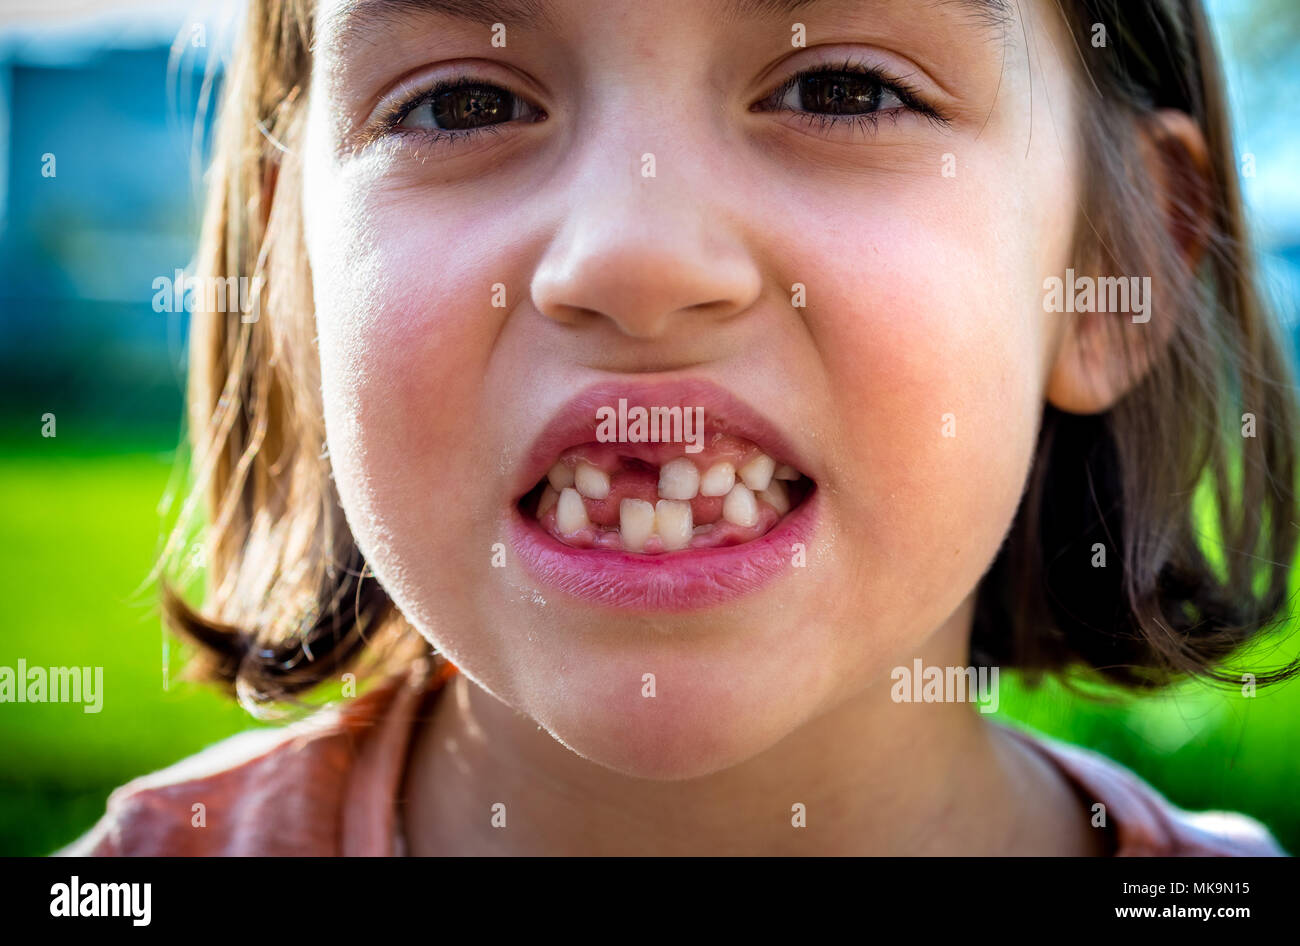 Ritratto di bambino priva di denti mancanti ragazza latte e denti permanenti. Primo piano del giovane capretto con denti lacune e permanente in crescita i denti e le gengive sane p Foto Stock